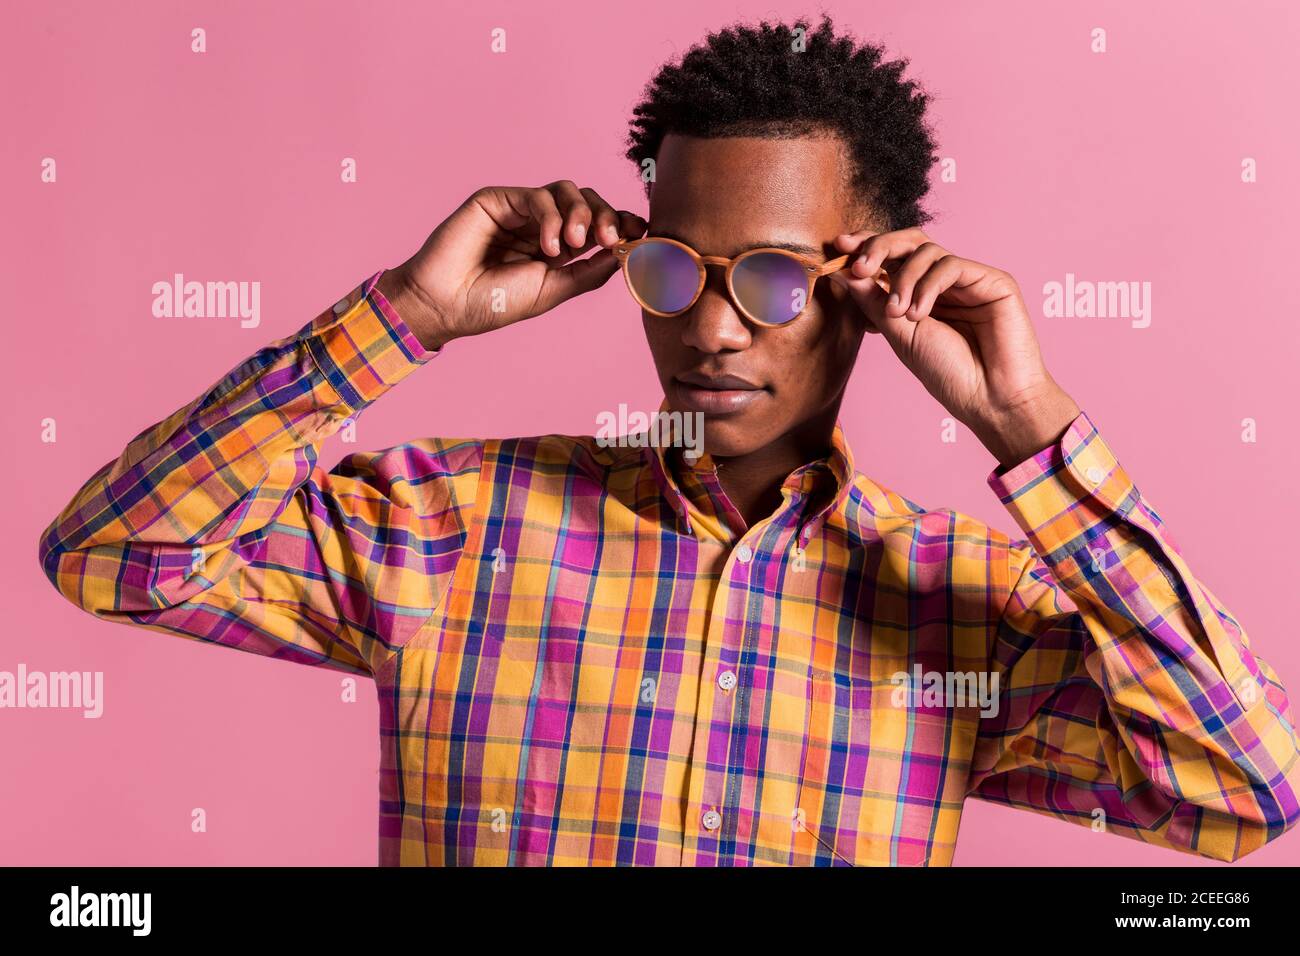 Homme noir tendance portant une chemise à carreaux de couleur rose brillant lunettes de soleil sur fond rose Banque D'Images